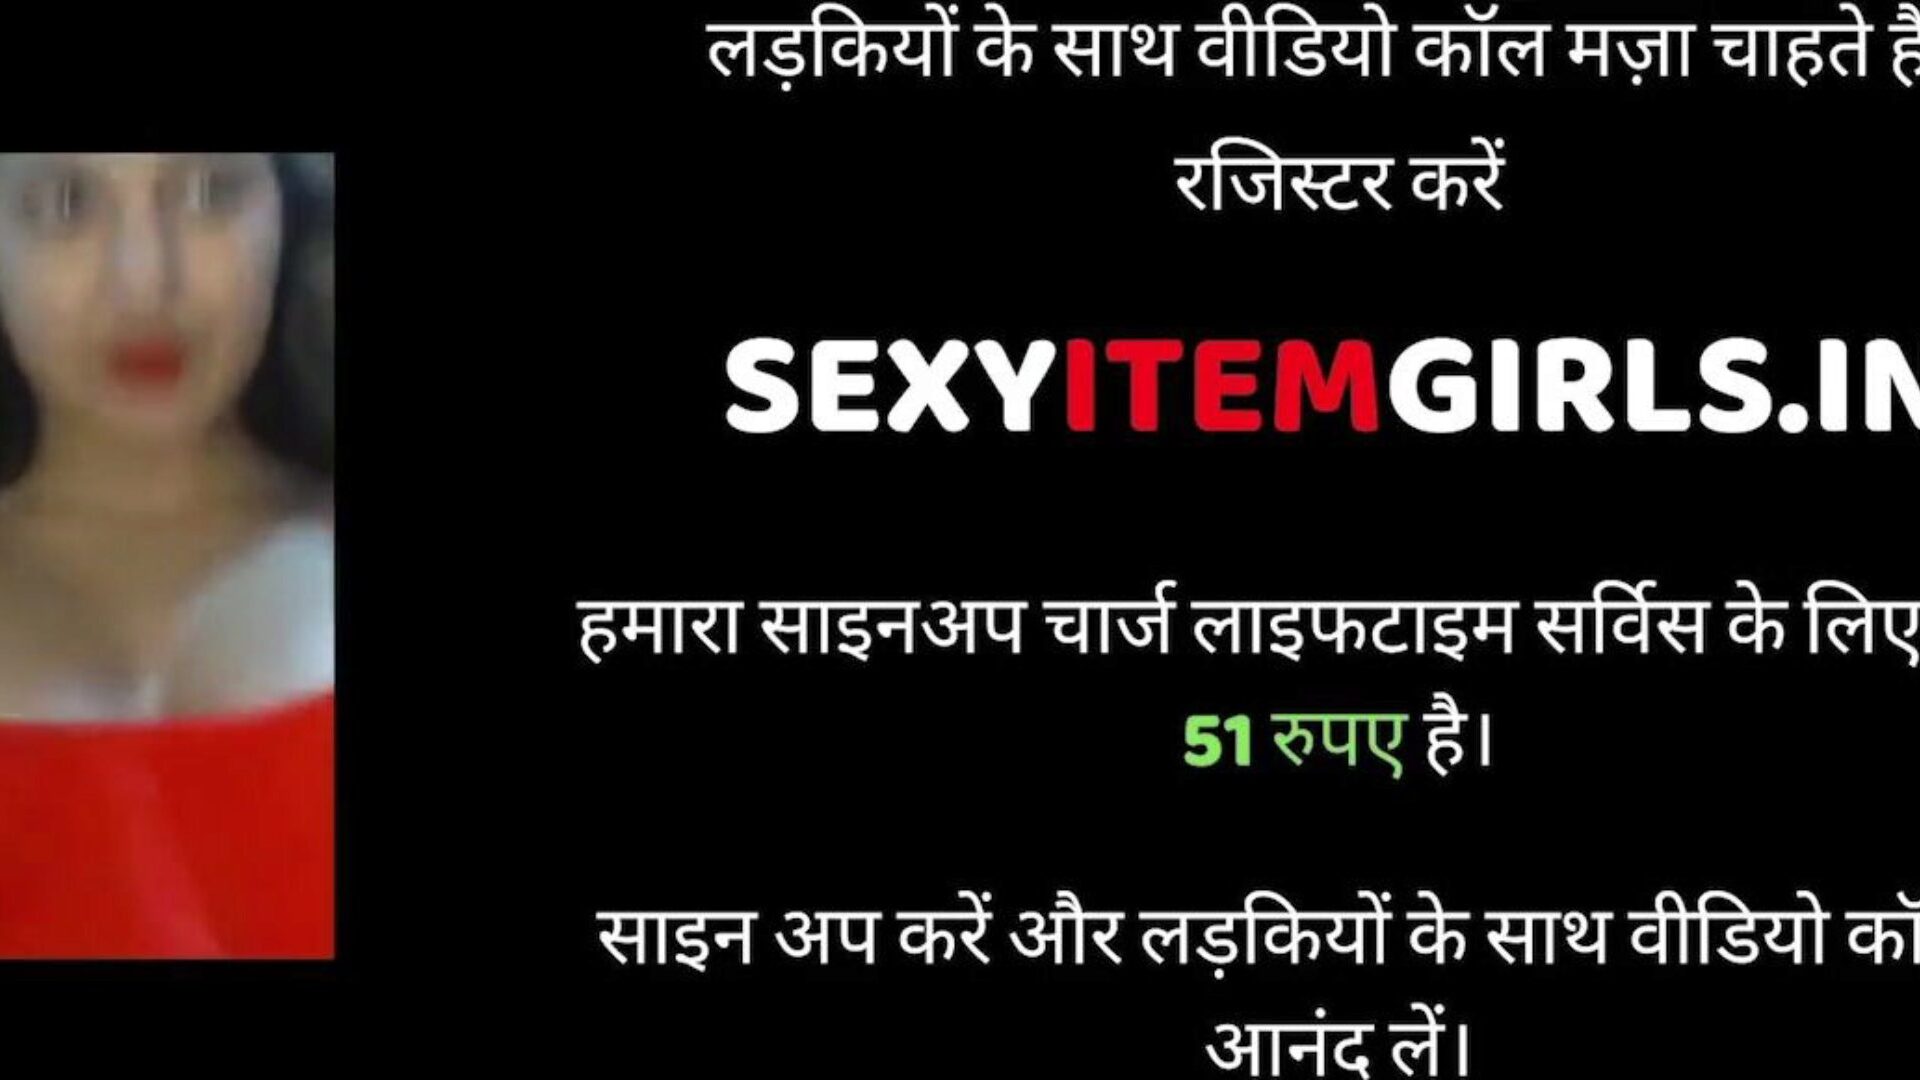 indyjski seks z mężem i żoną, darmowy seks xnxx porno 95: xHamster oglądaj indyjski mąż i żona seks filmy na xHamster, najgrubszą stronę z garbami HD z mnóstwem darmowego seksu xnxx hardcore i wytrysk w cipce filmy pornograficzne